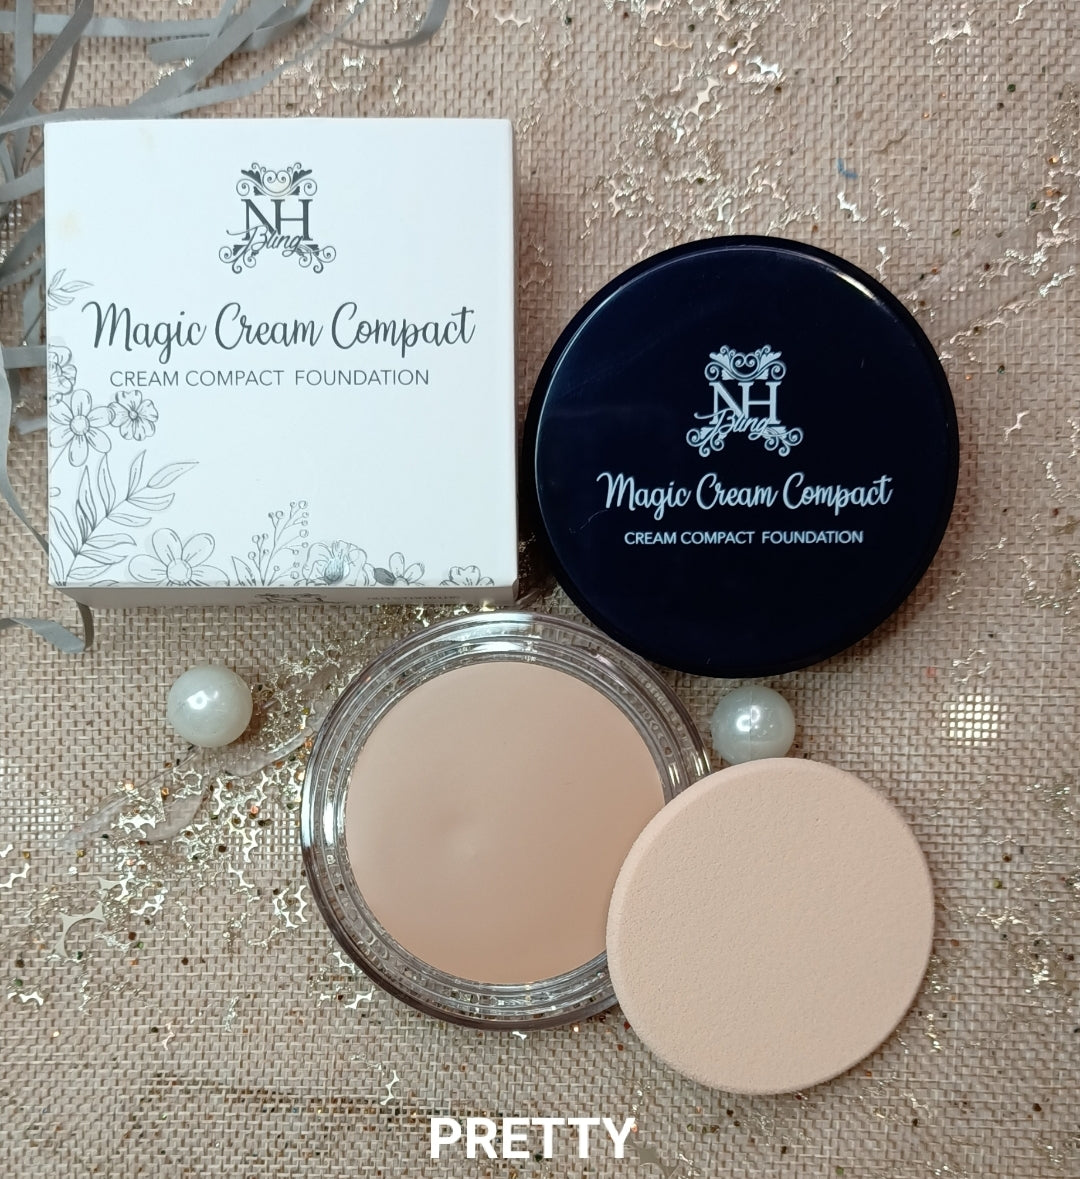 Magic Cream Compact